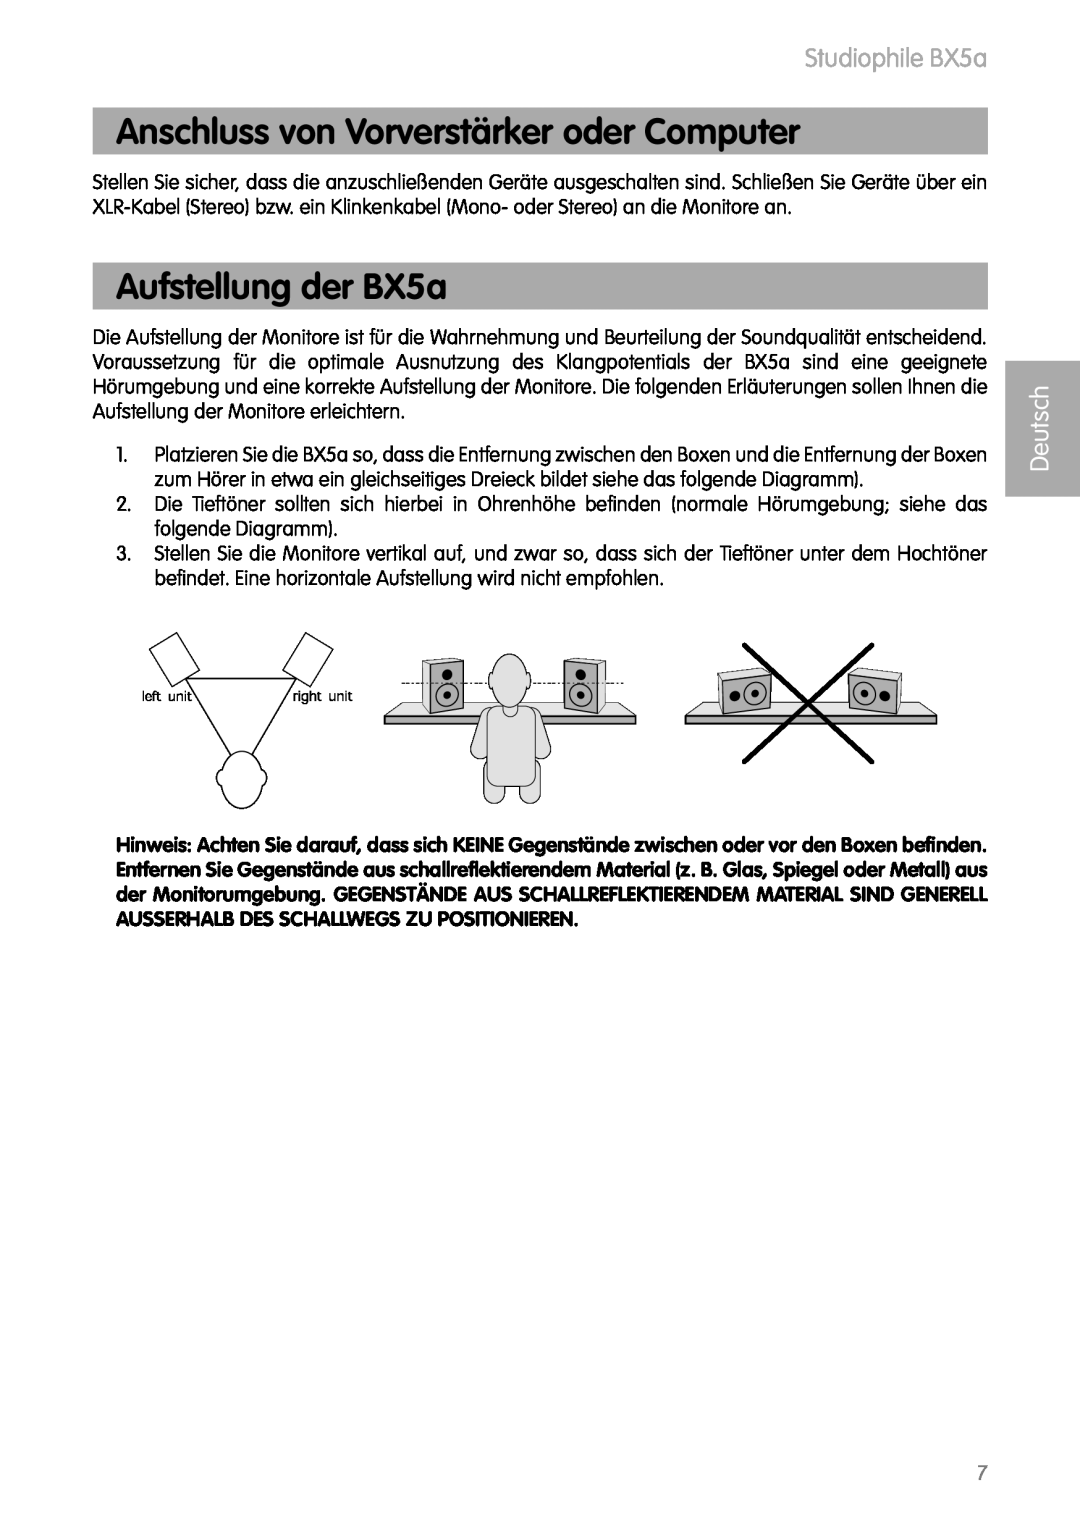 M-Audio manual Anschluss von Vorverstärker oder Computer, Aufstellung der BX5a, Studiophile BX5a, Deutsch 